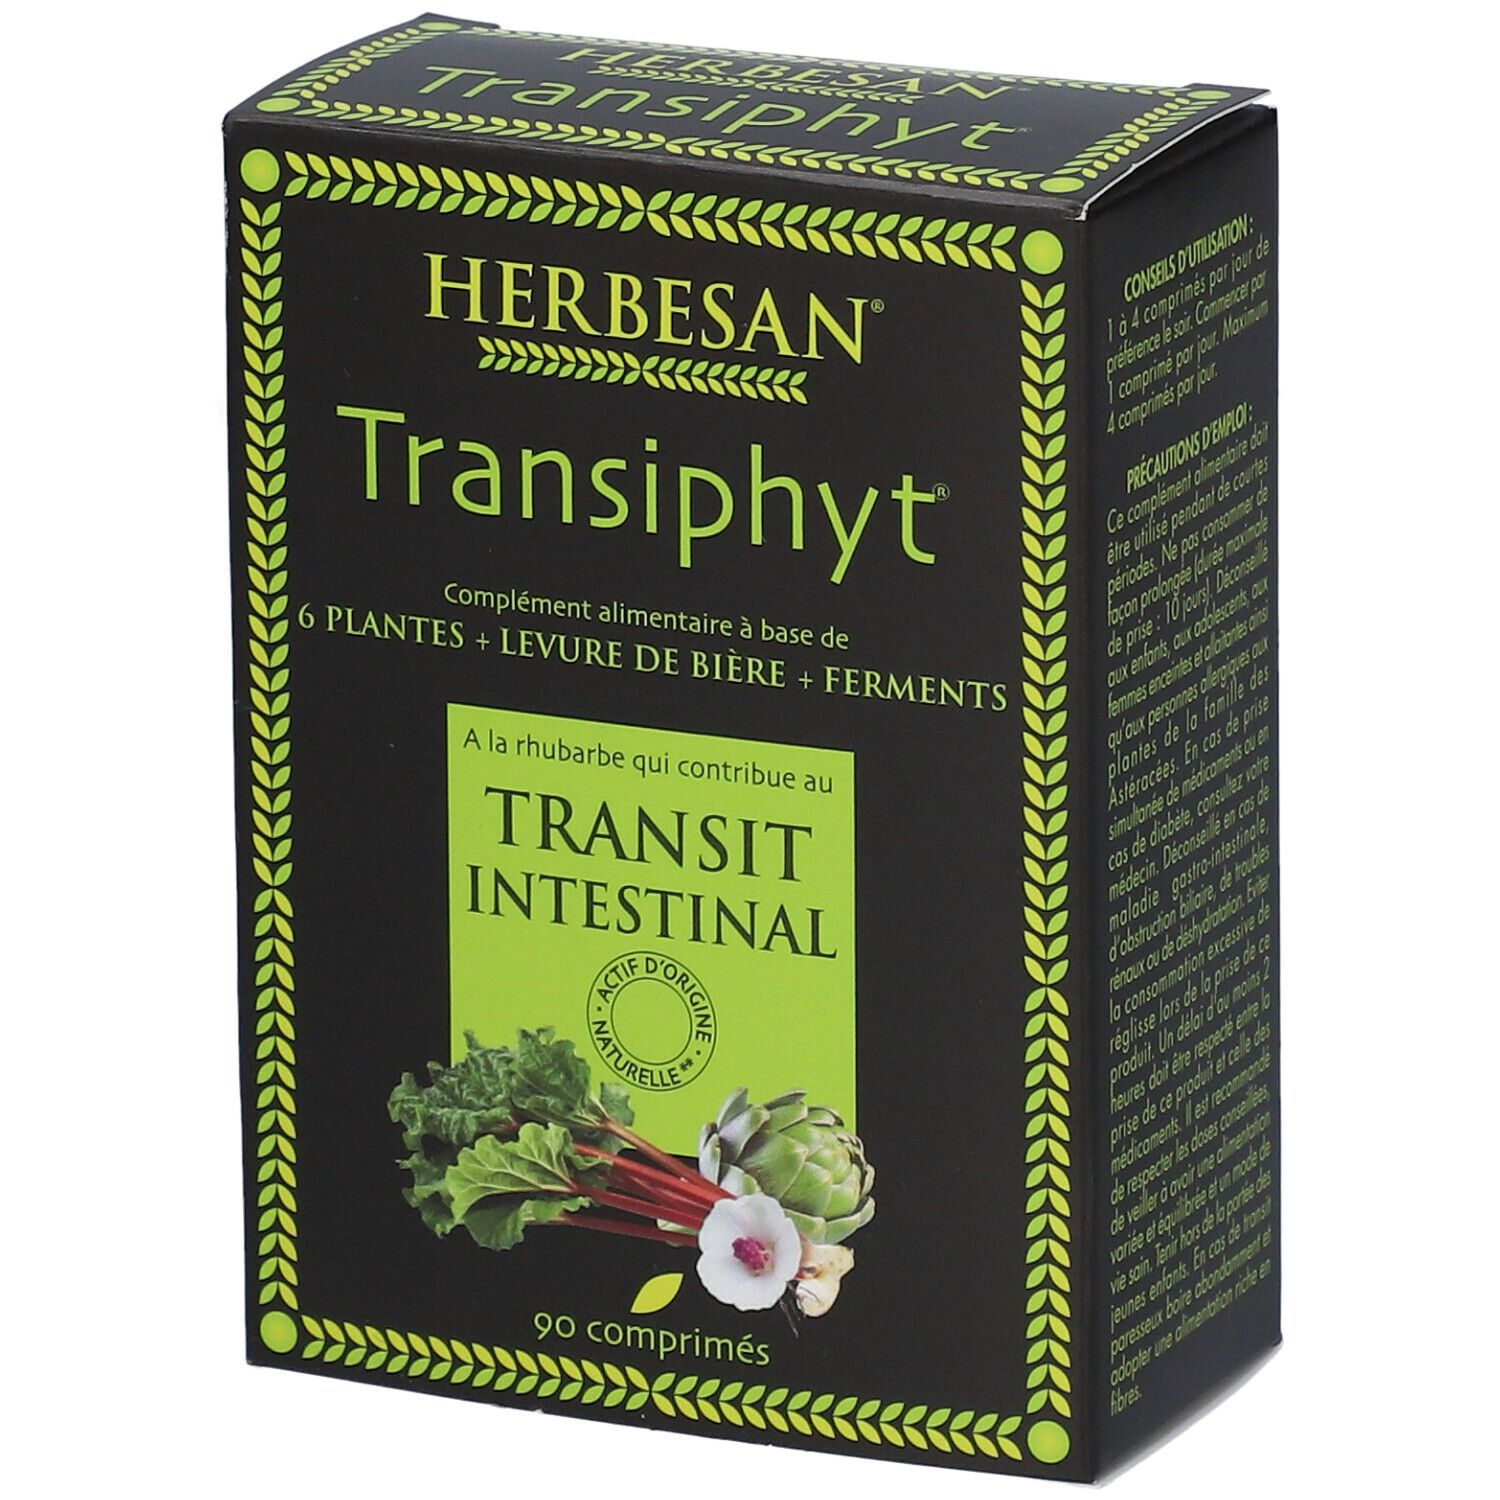 Herbesan® transiphyt